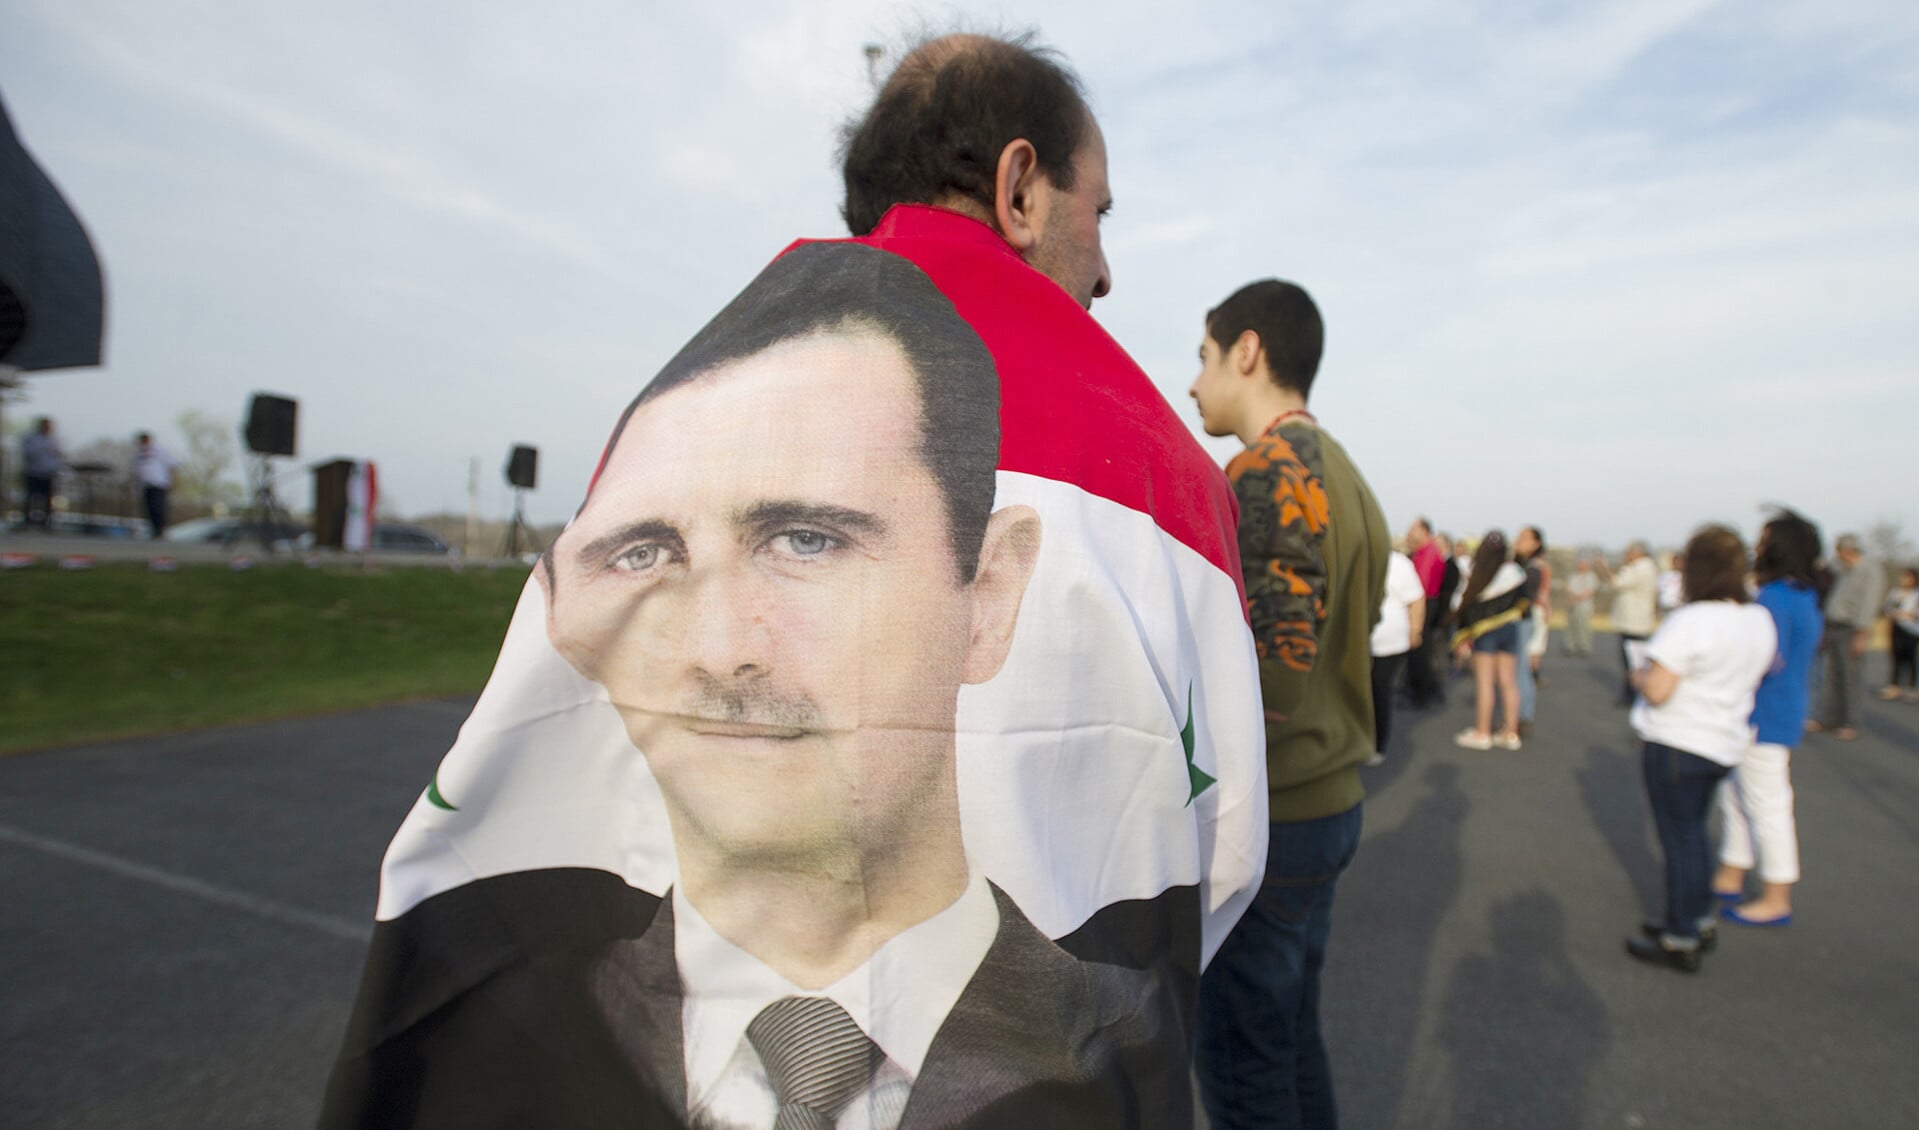 De viering van de Syrische Onafhankelijkheidsdag, afgelopen zaterdag, in de Syrische gemeenschap in de Verenigde Staten.